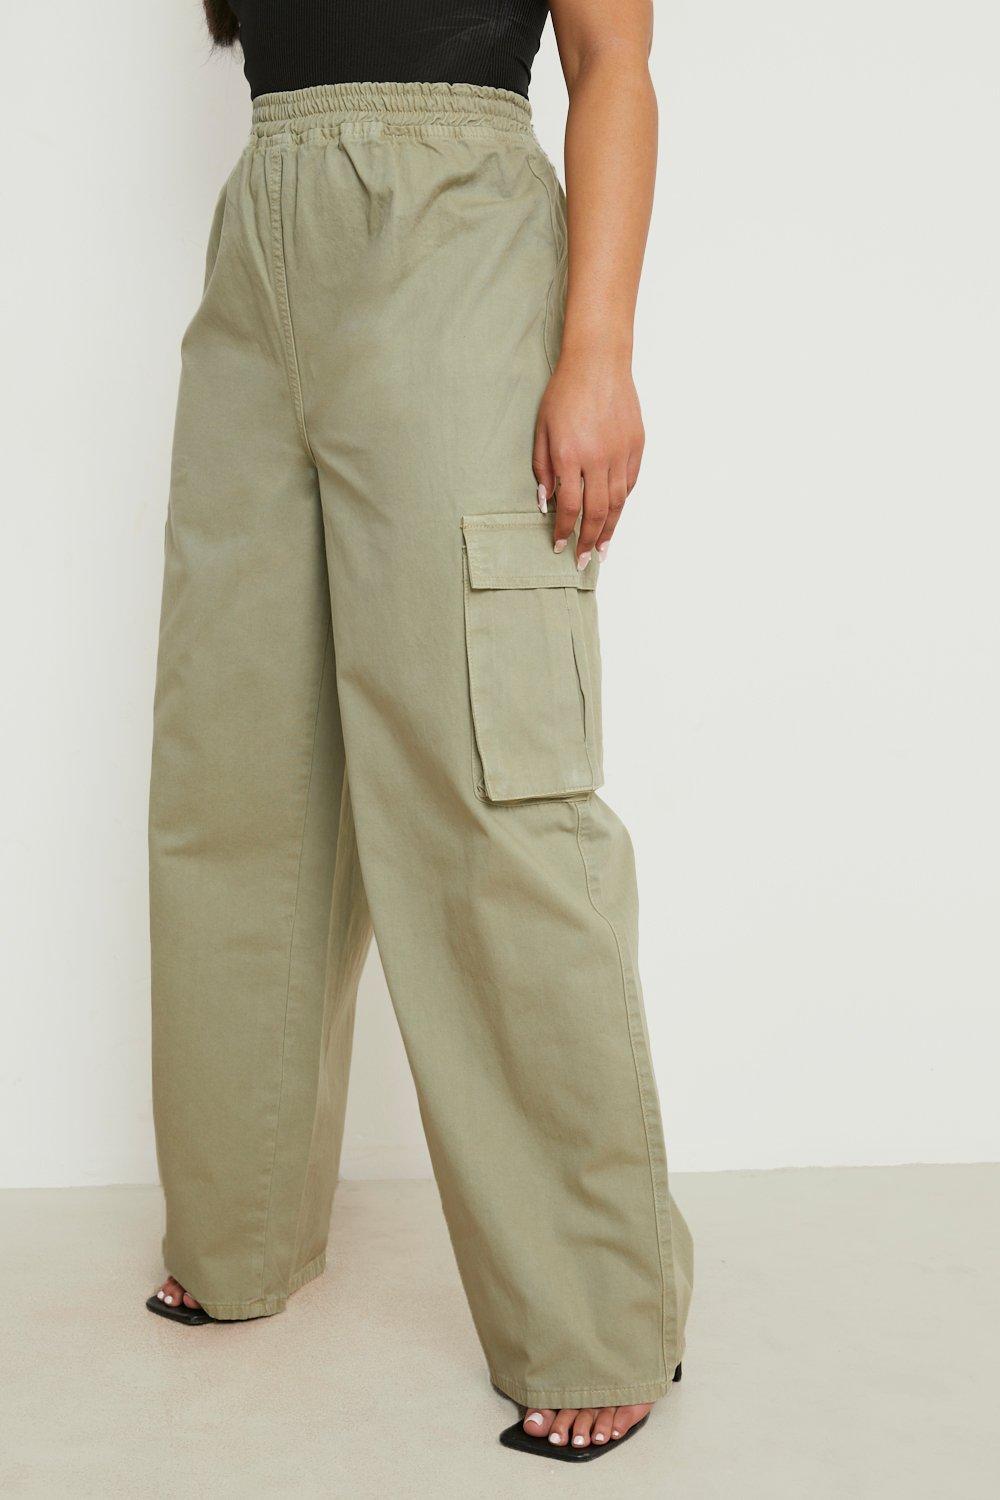 Unique Bargains Women's Plus Size Cargo Female Pants Elastic Waist